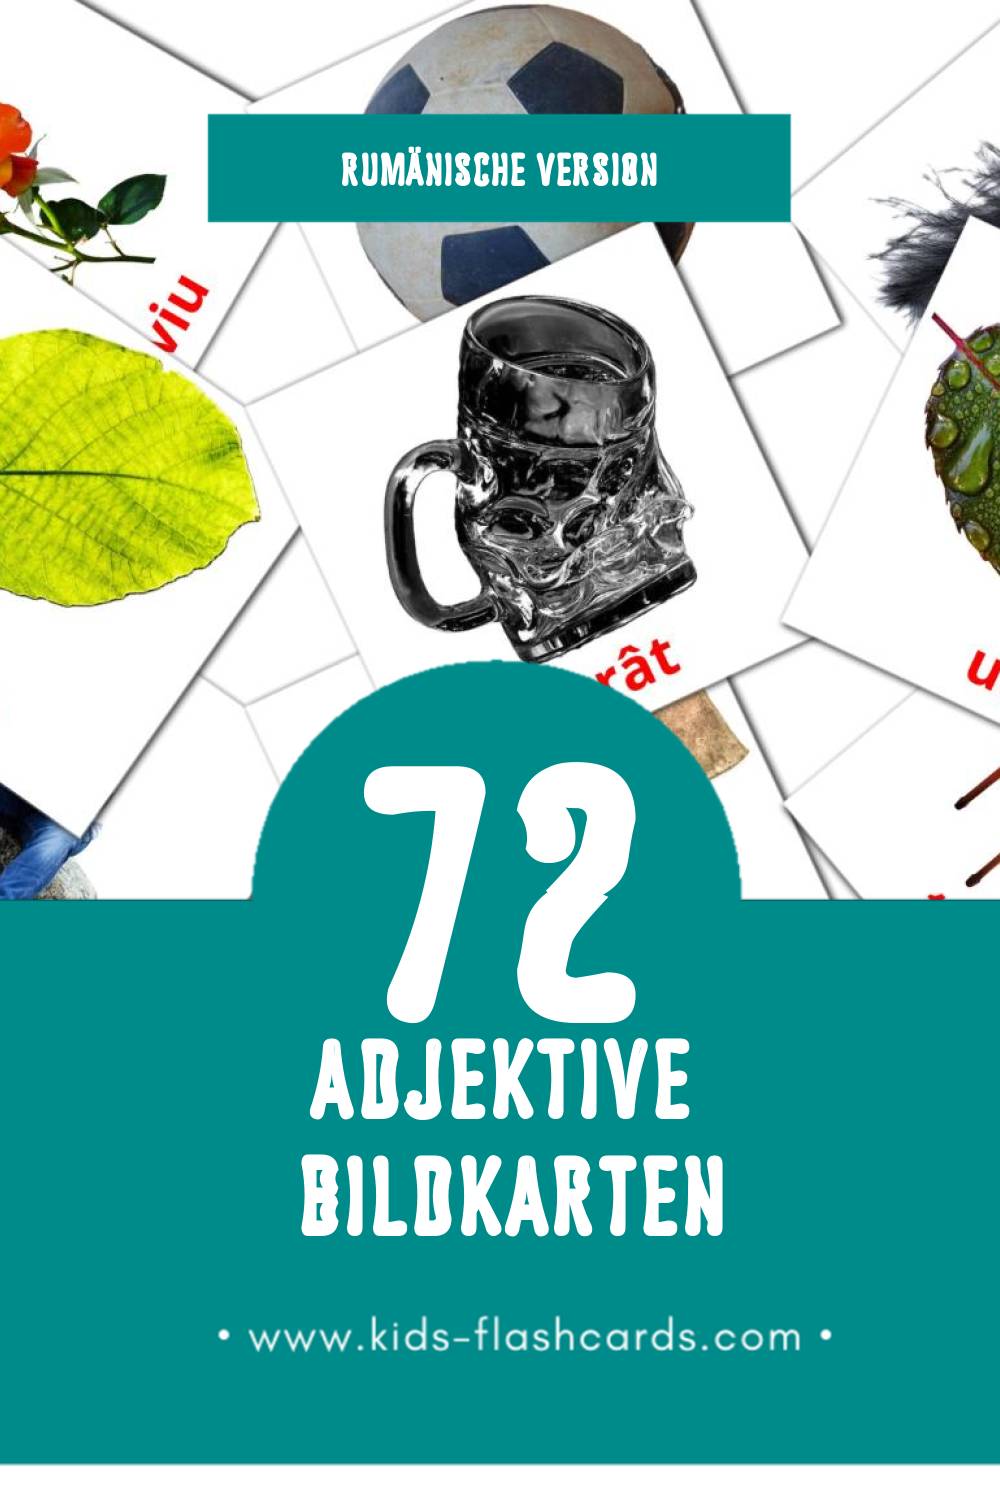 Visual Adjective  Flashcards für Kleinkinder (74 Karten in Rumänisch)